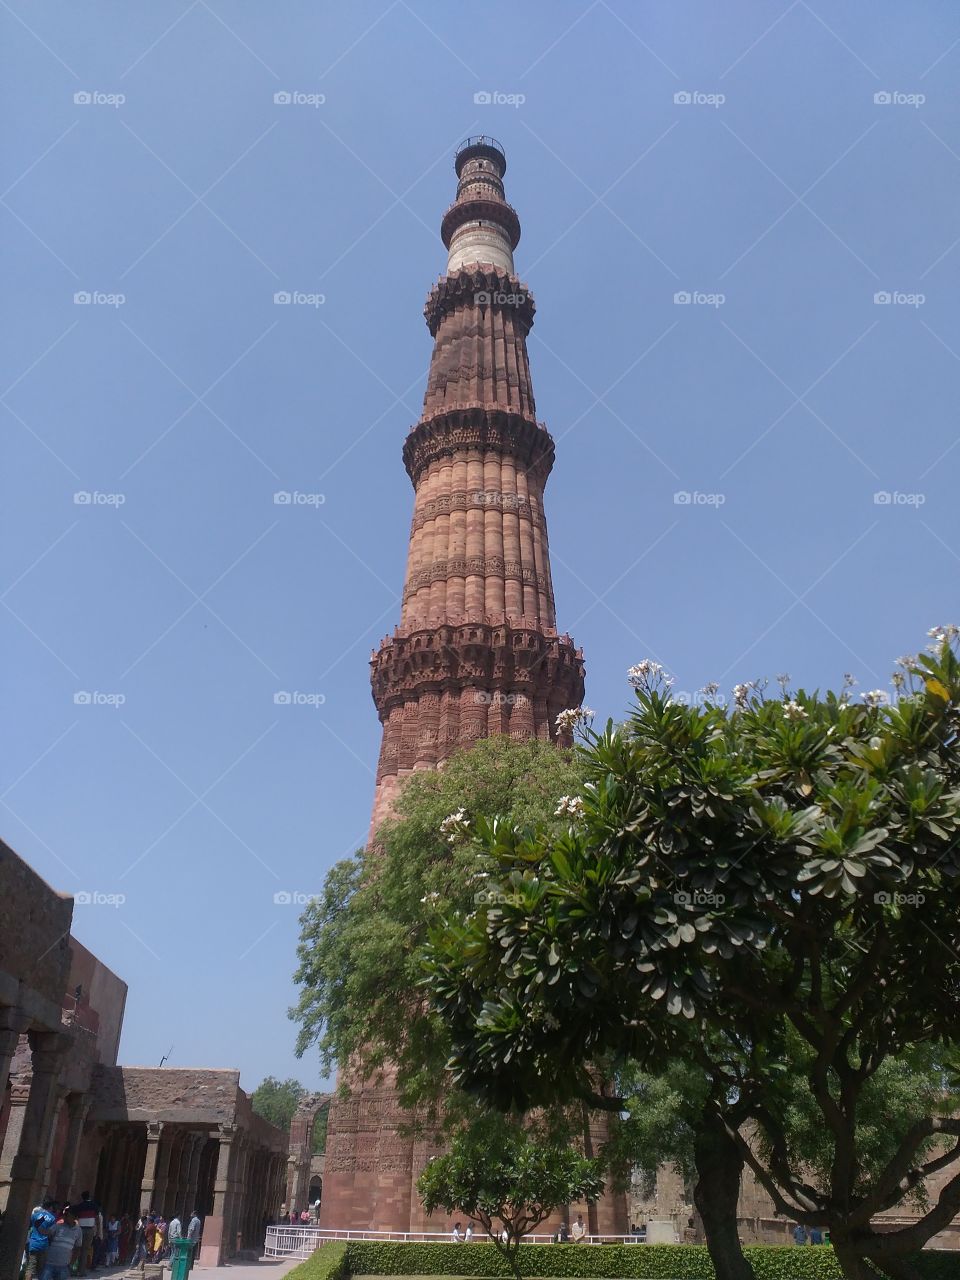 a historical place Delhi
kutubmeenar
India